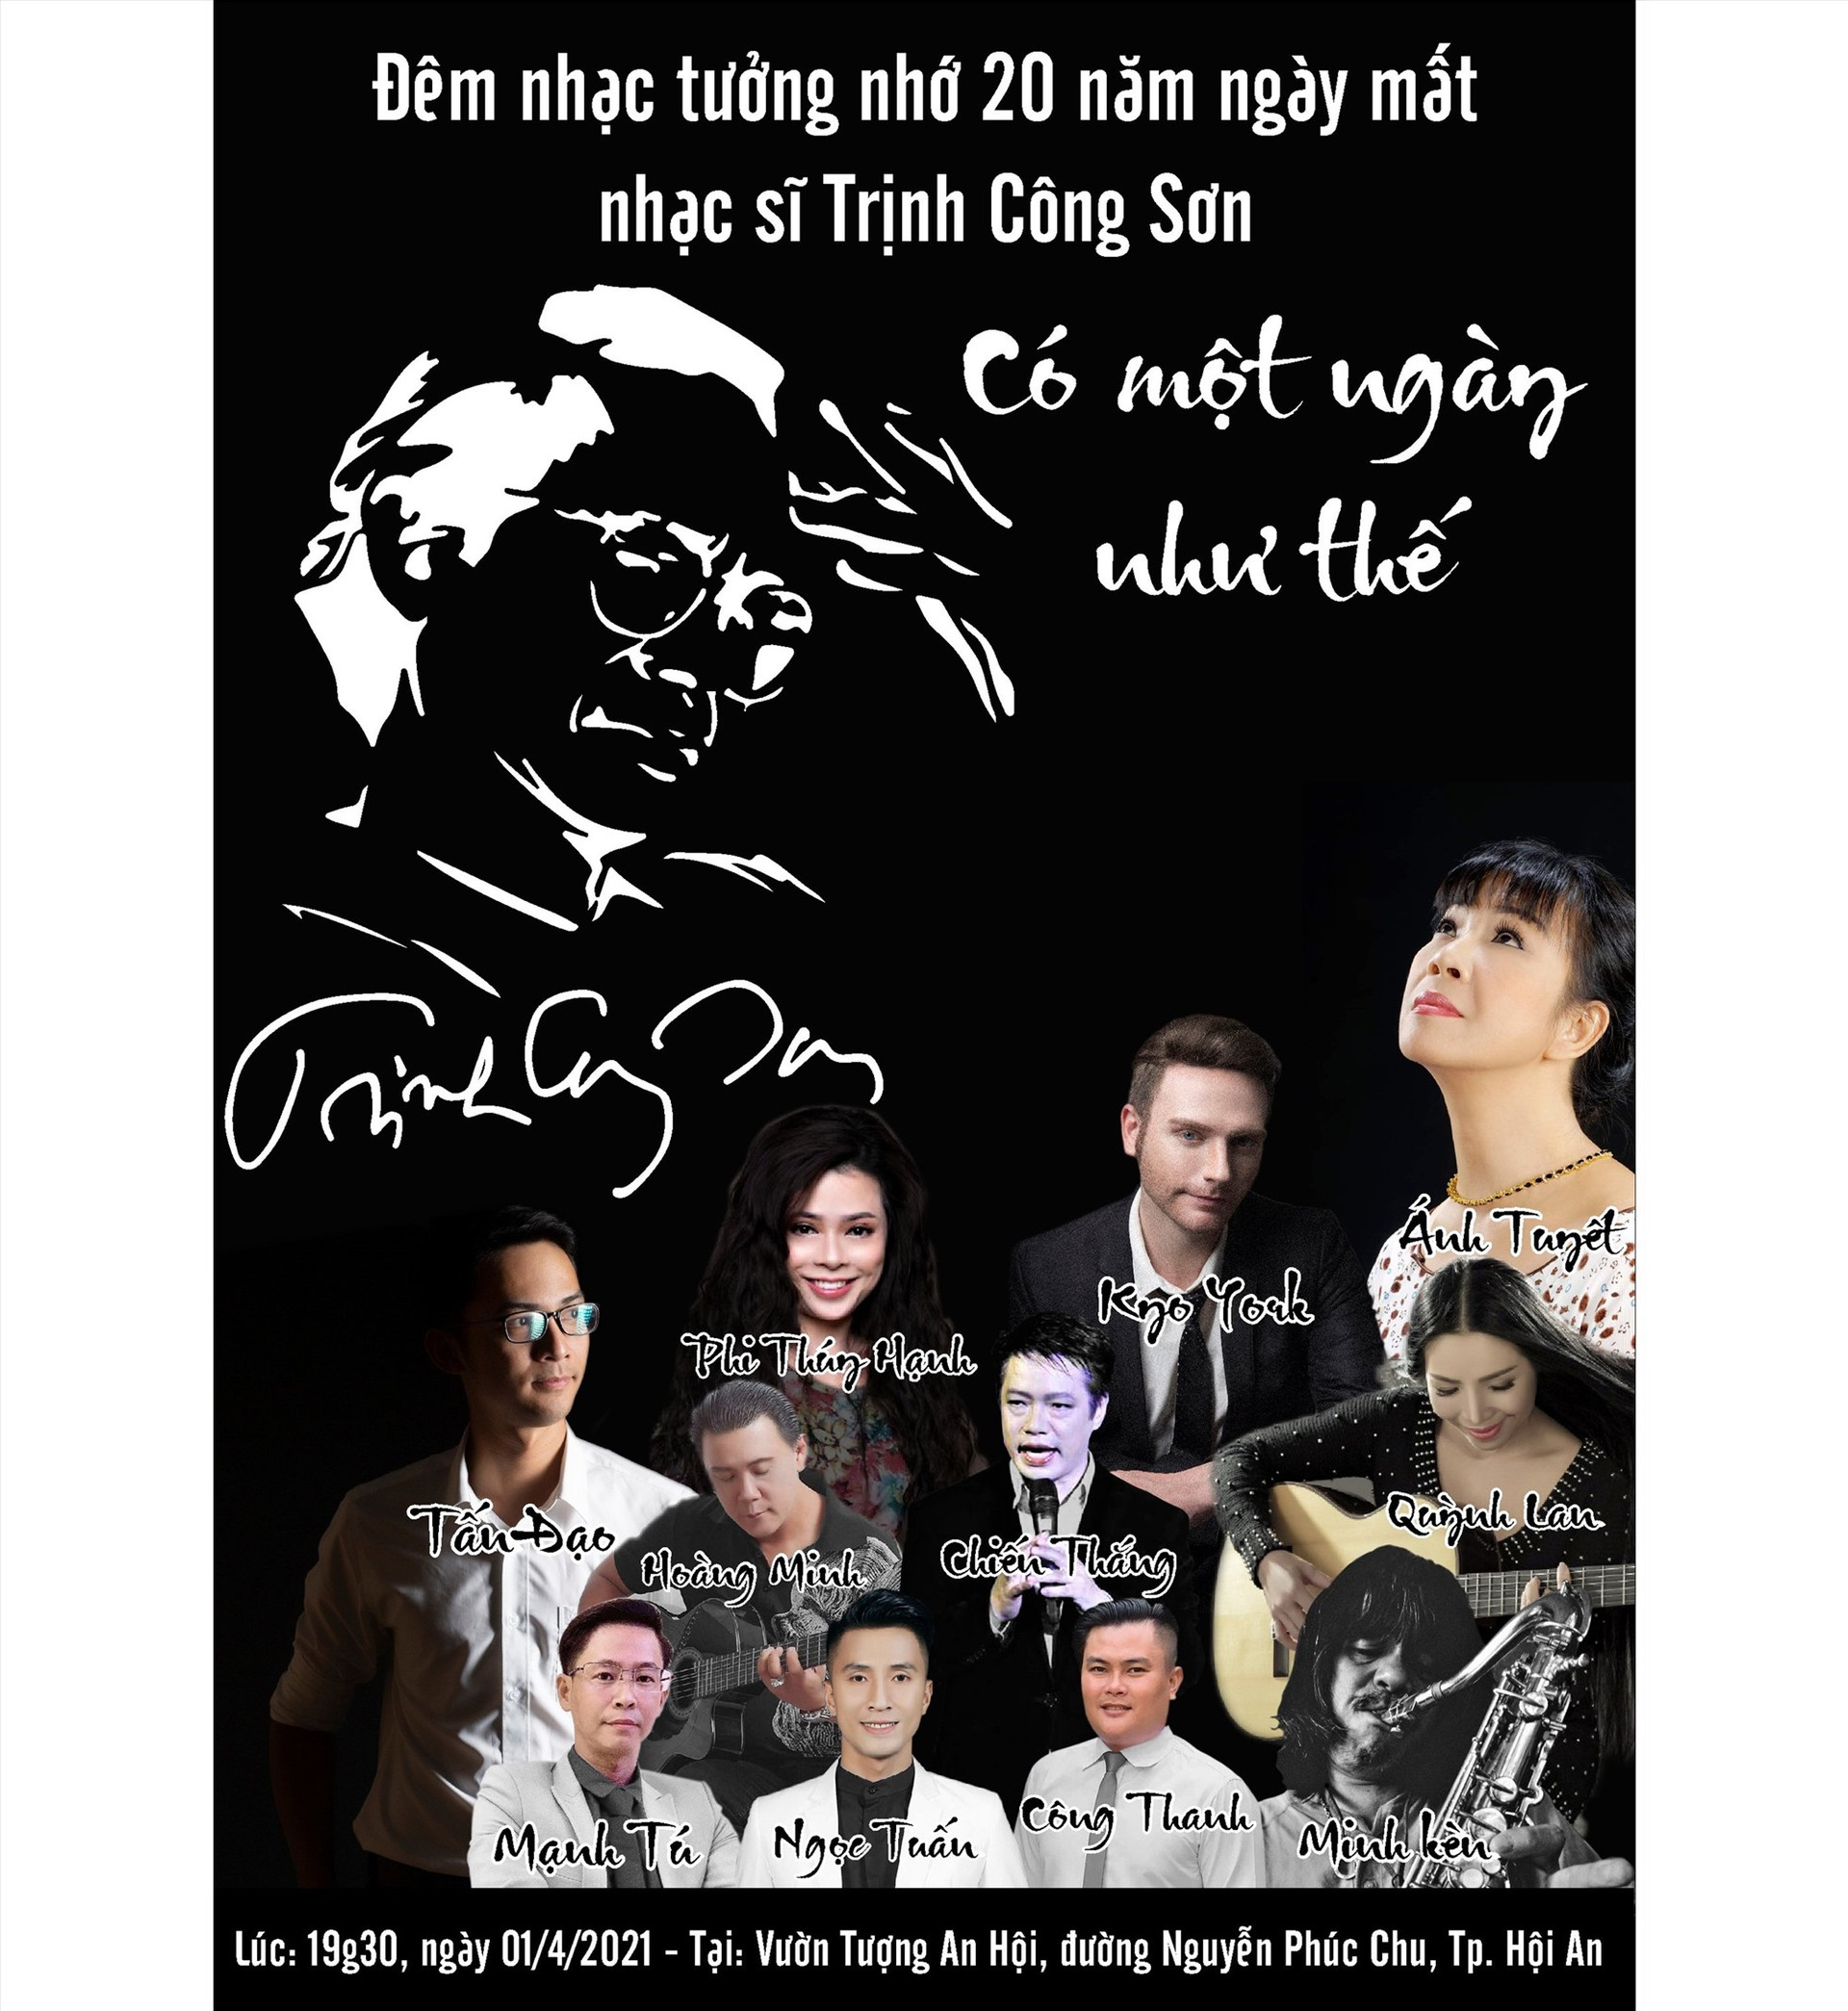 Đêm nhạc tưởng nhớ nhạc sỹ Trinh Công Sơn sẽ diễn ra ngày 1.4 tại TP.Hội An